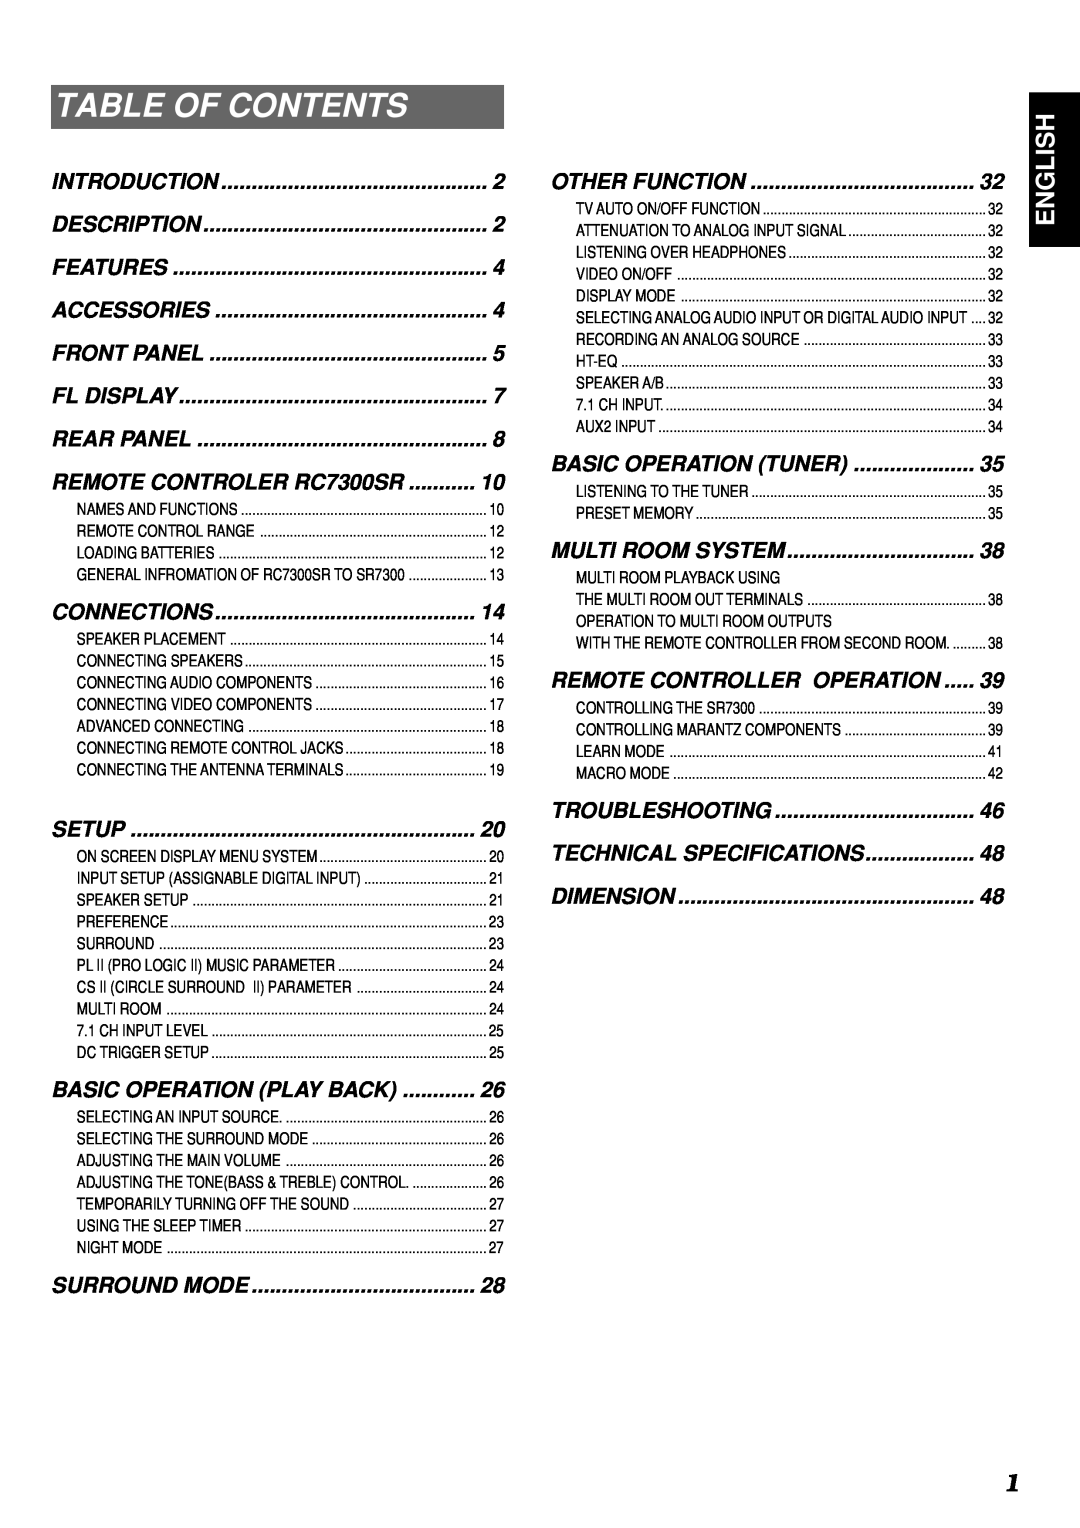 Marantz SR7300 manual Table Of Contents, English 